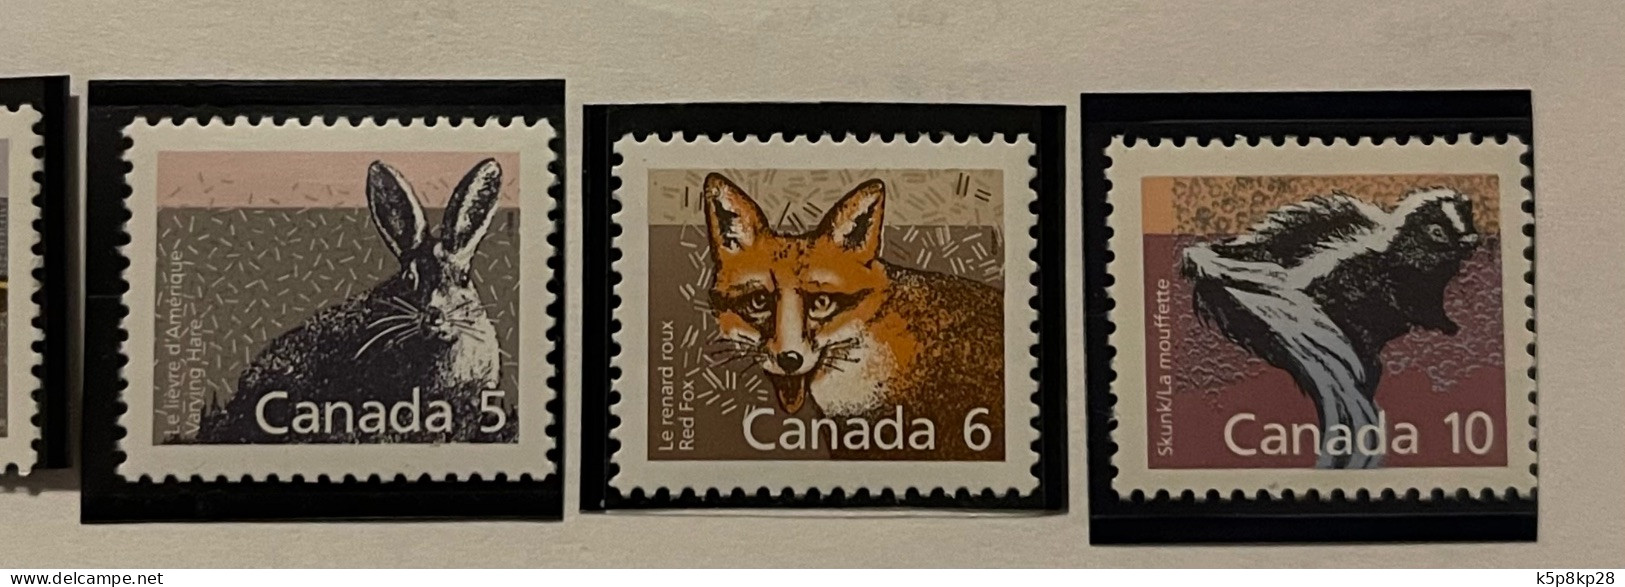 1987 Canada Stamps, Wild Definitives, 6 Value, MNH, VF - Ungebraucht